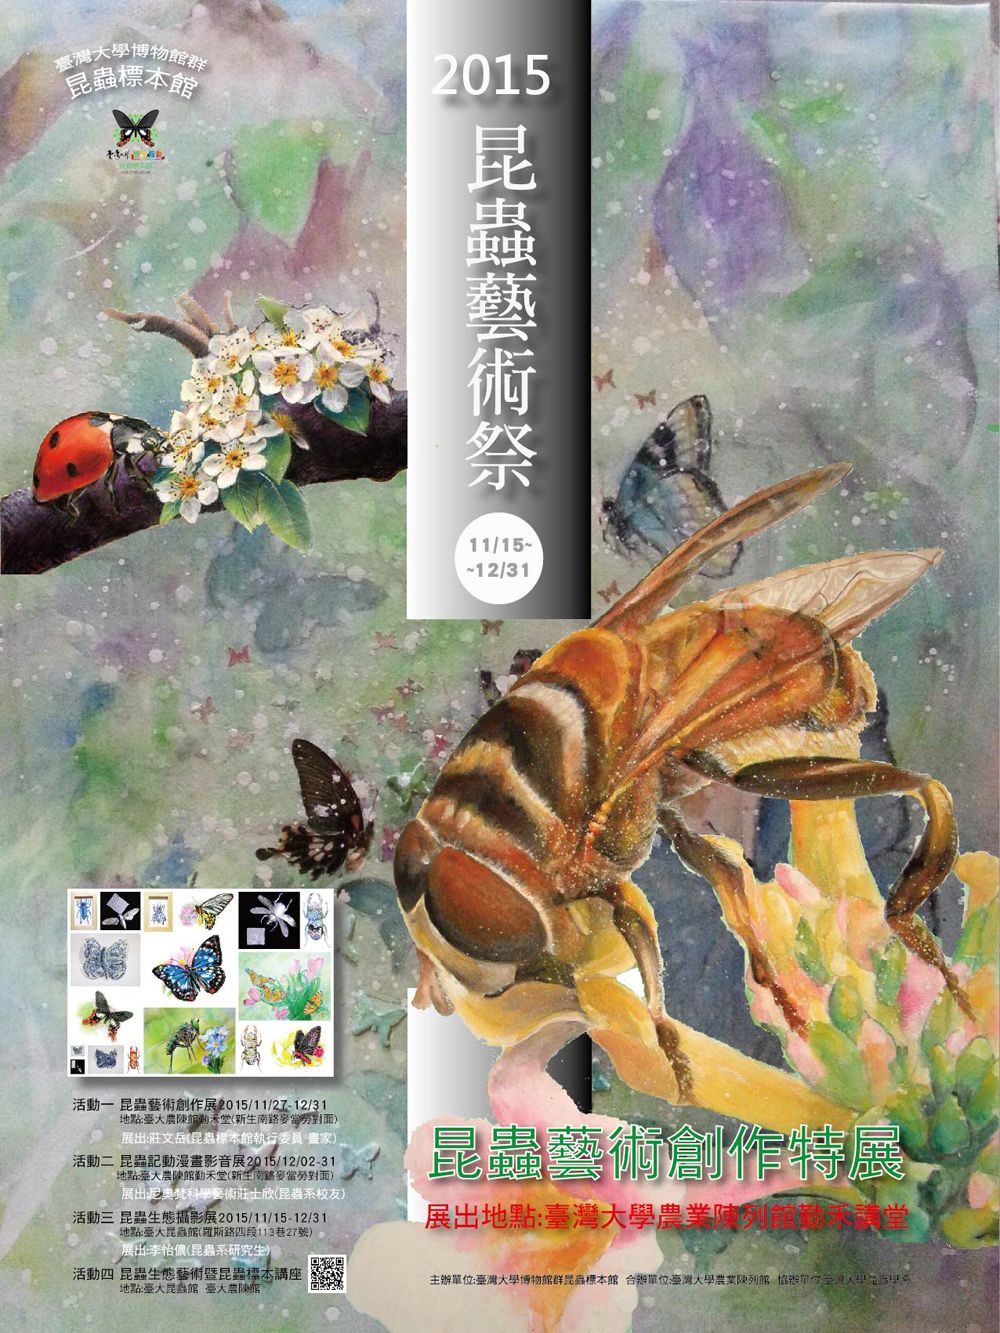 邁入第四年臺大昆蟲藝術祭正式開跑!